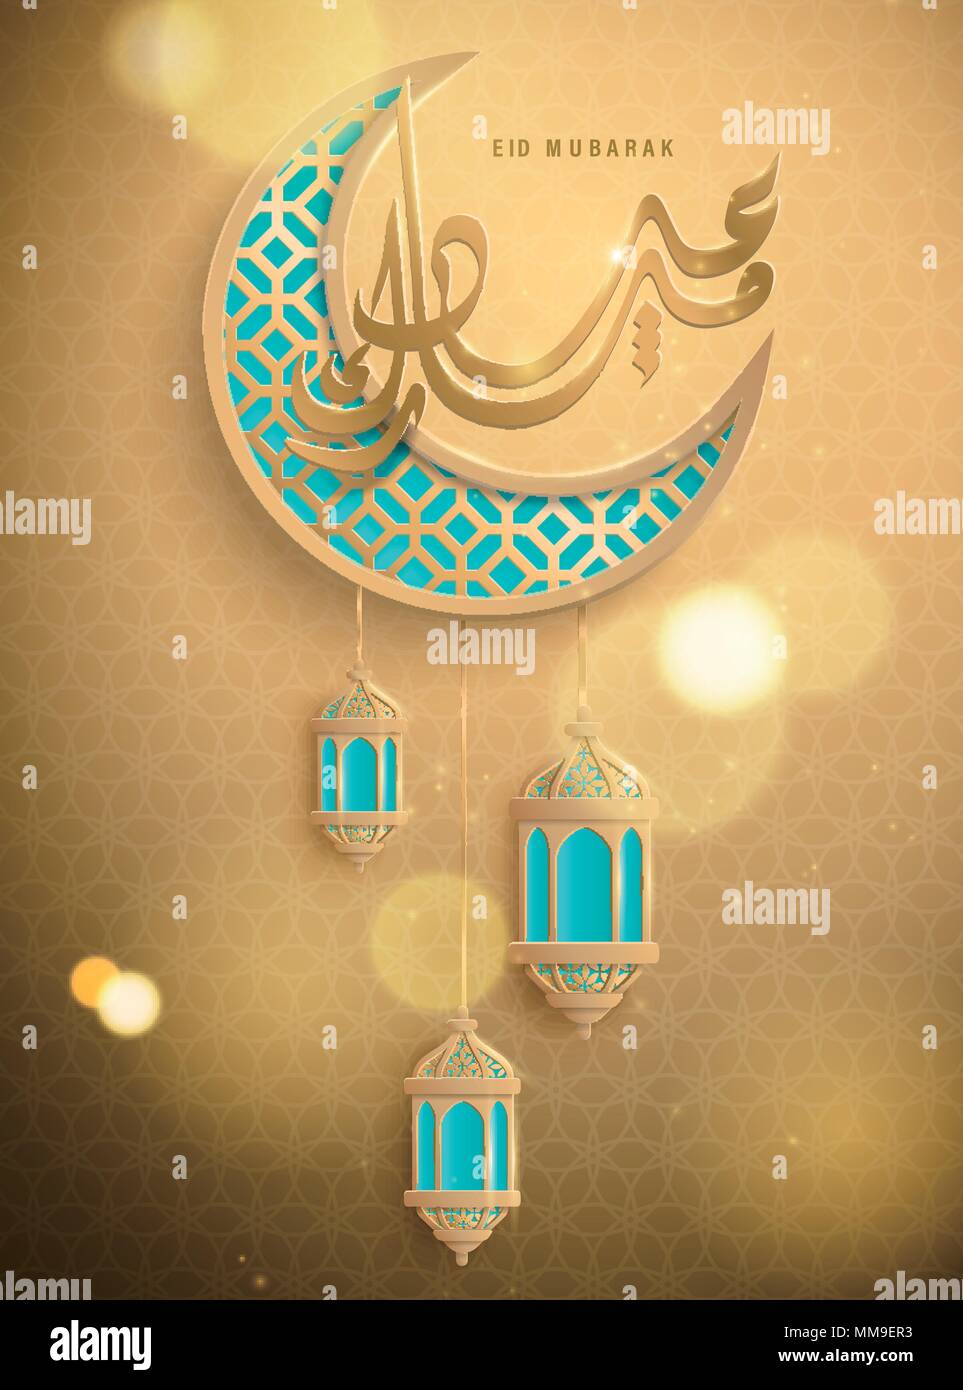 Eid Mubarak conçu avec calligraphie crescent et lanterne en golden et bleu aigue-marine Illustration de Vecteur